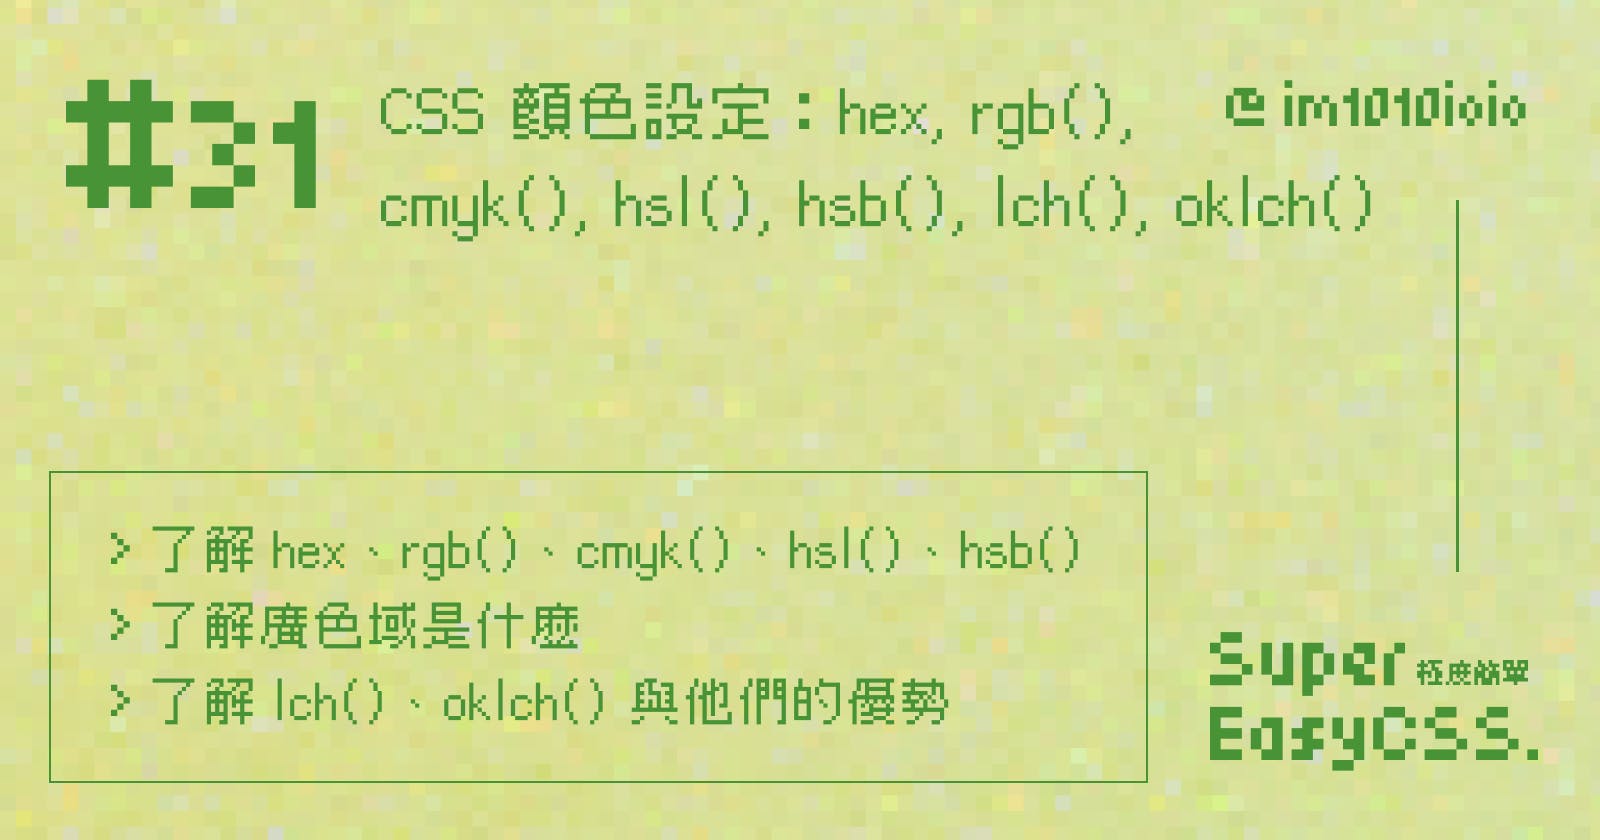 #31 CSS 顏色設定：基本的 hex、rgb()、cmyk()、hsl()、hsb() 、hwb() 與明日之星的 lch()、oklch()